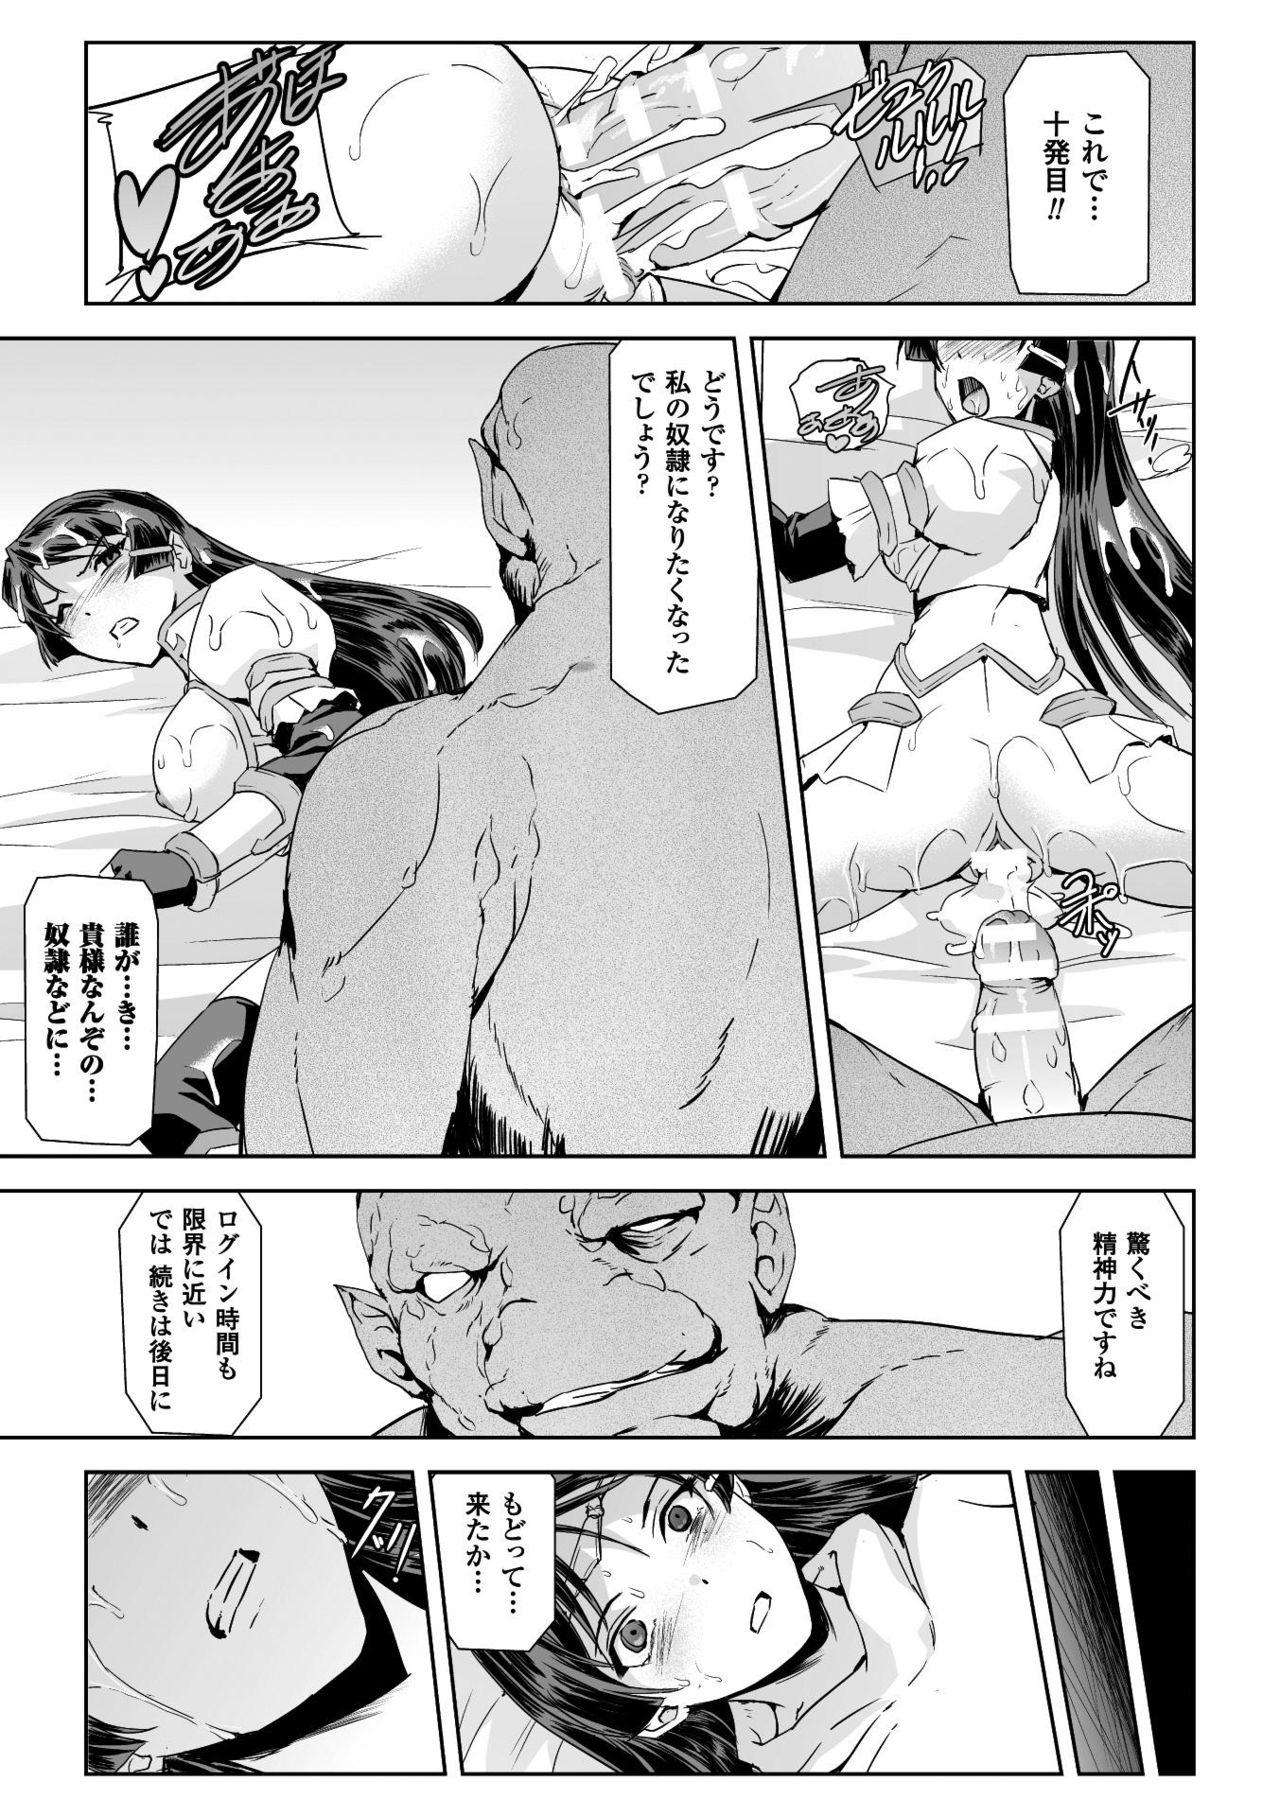 Seigi no Heroine Kangoku File Vol. 16 14